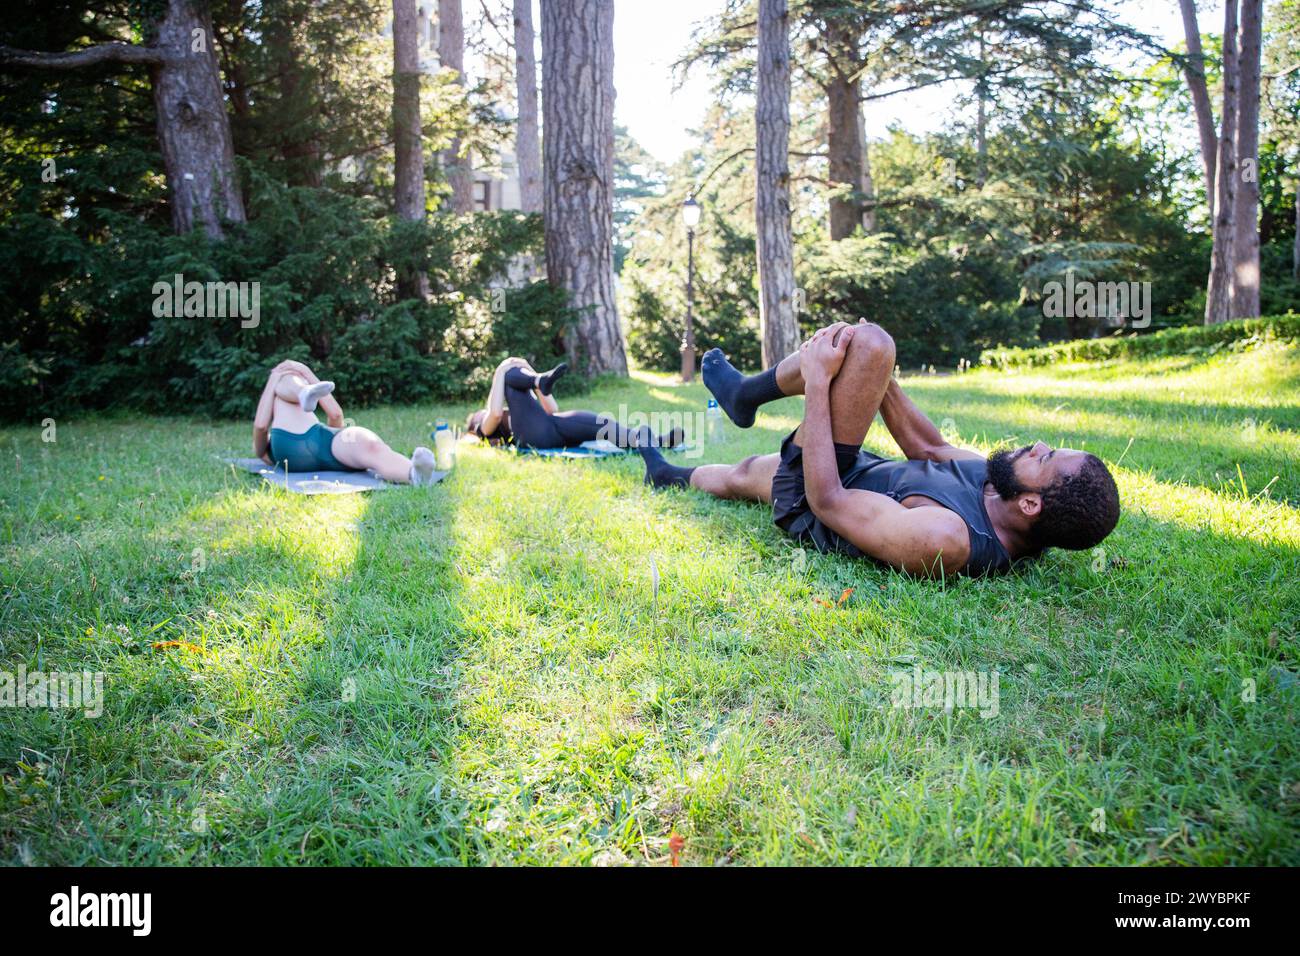 Tre persone stanno sdraiando sull'erba in un parco e si allenano insieme, si adattano allo stile di vita Foto Stock